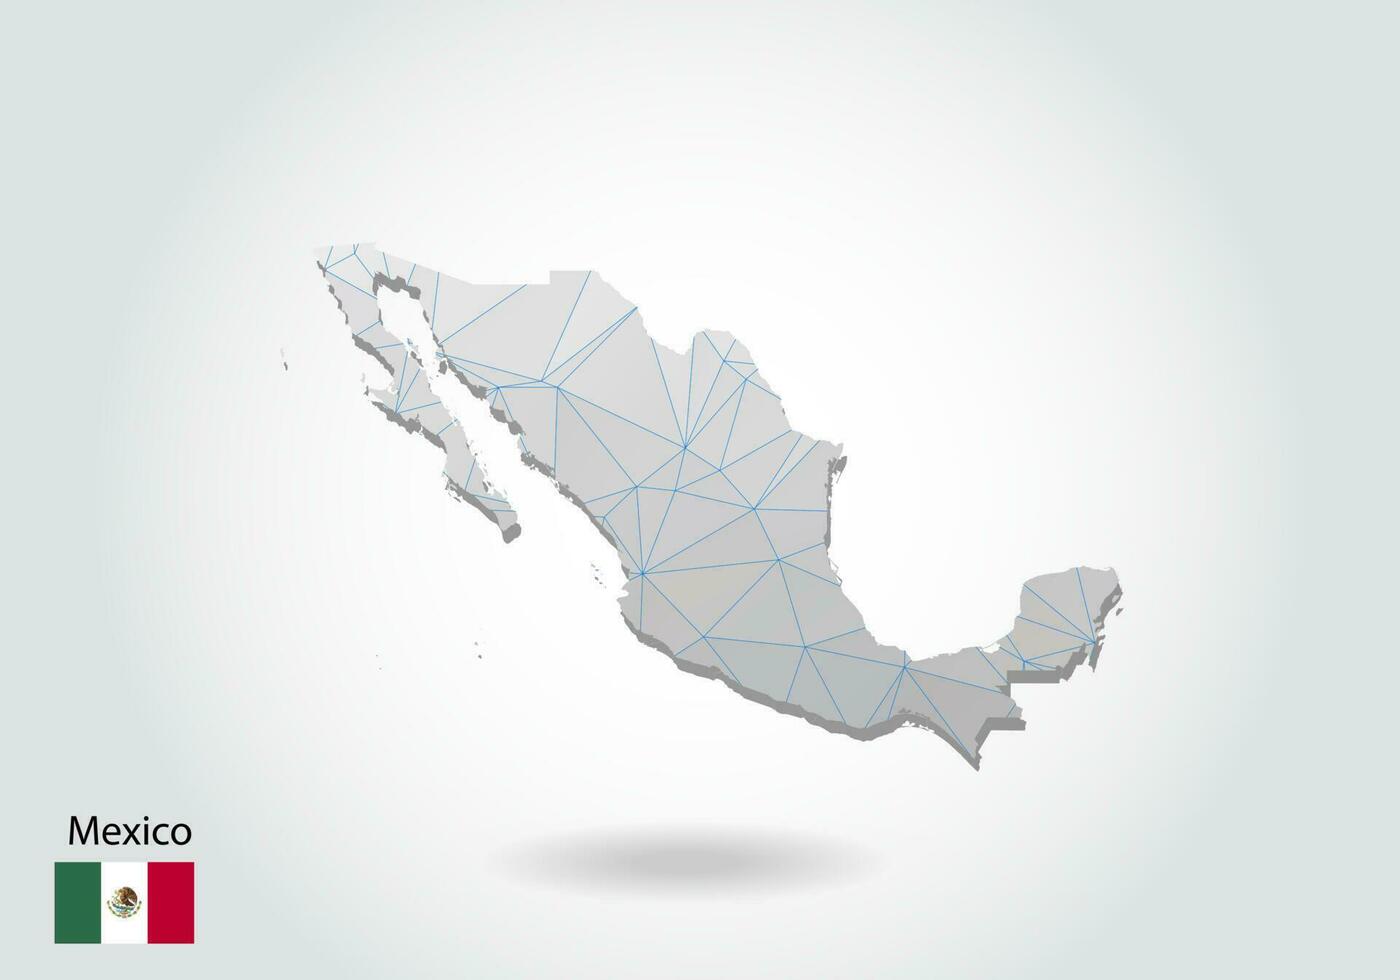 vektorkarte von mexiko mit trendigem dreiecksdesign im polygonalen stil auf dunklem hintergrund, kartenform im modernen 3d-papierschnittkunststil. geschichtetes Papierschnitt-Design. vektor